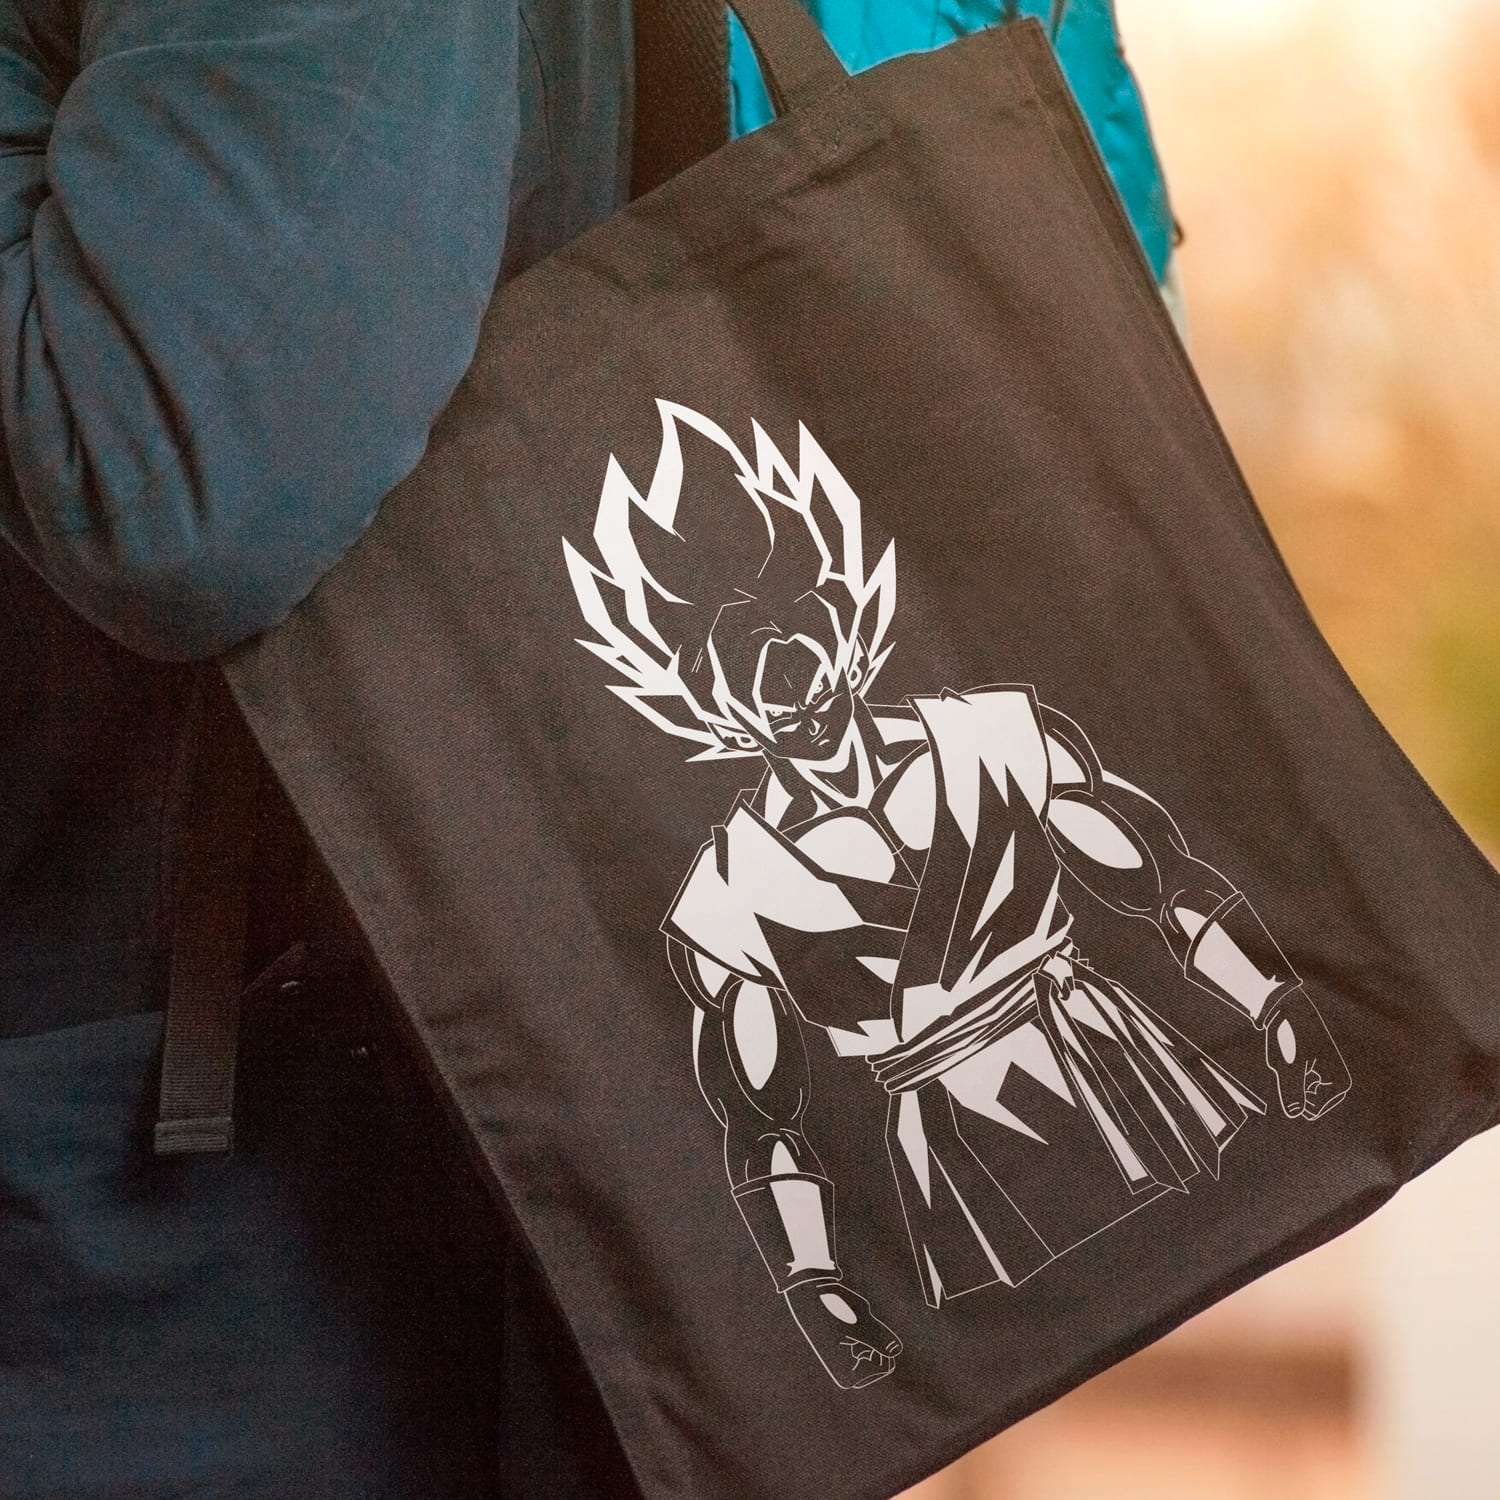 Dragon Ball Z Goku SVG on the black bag.